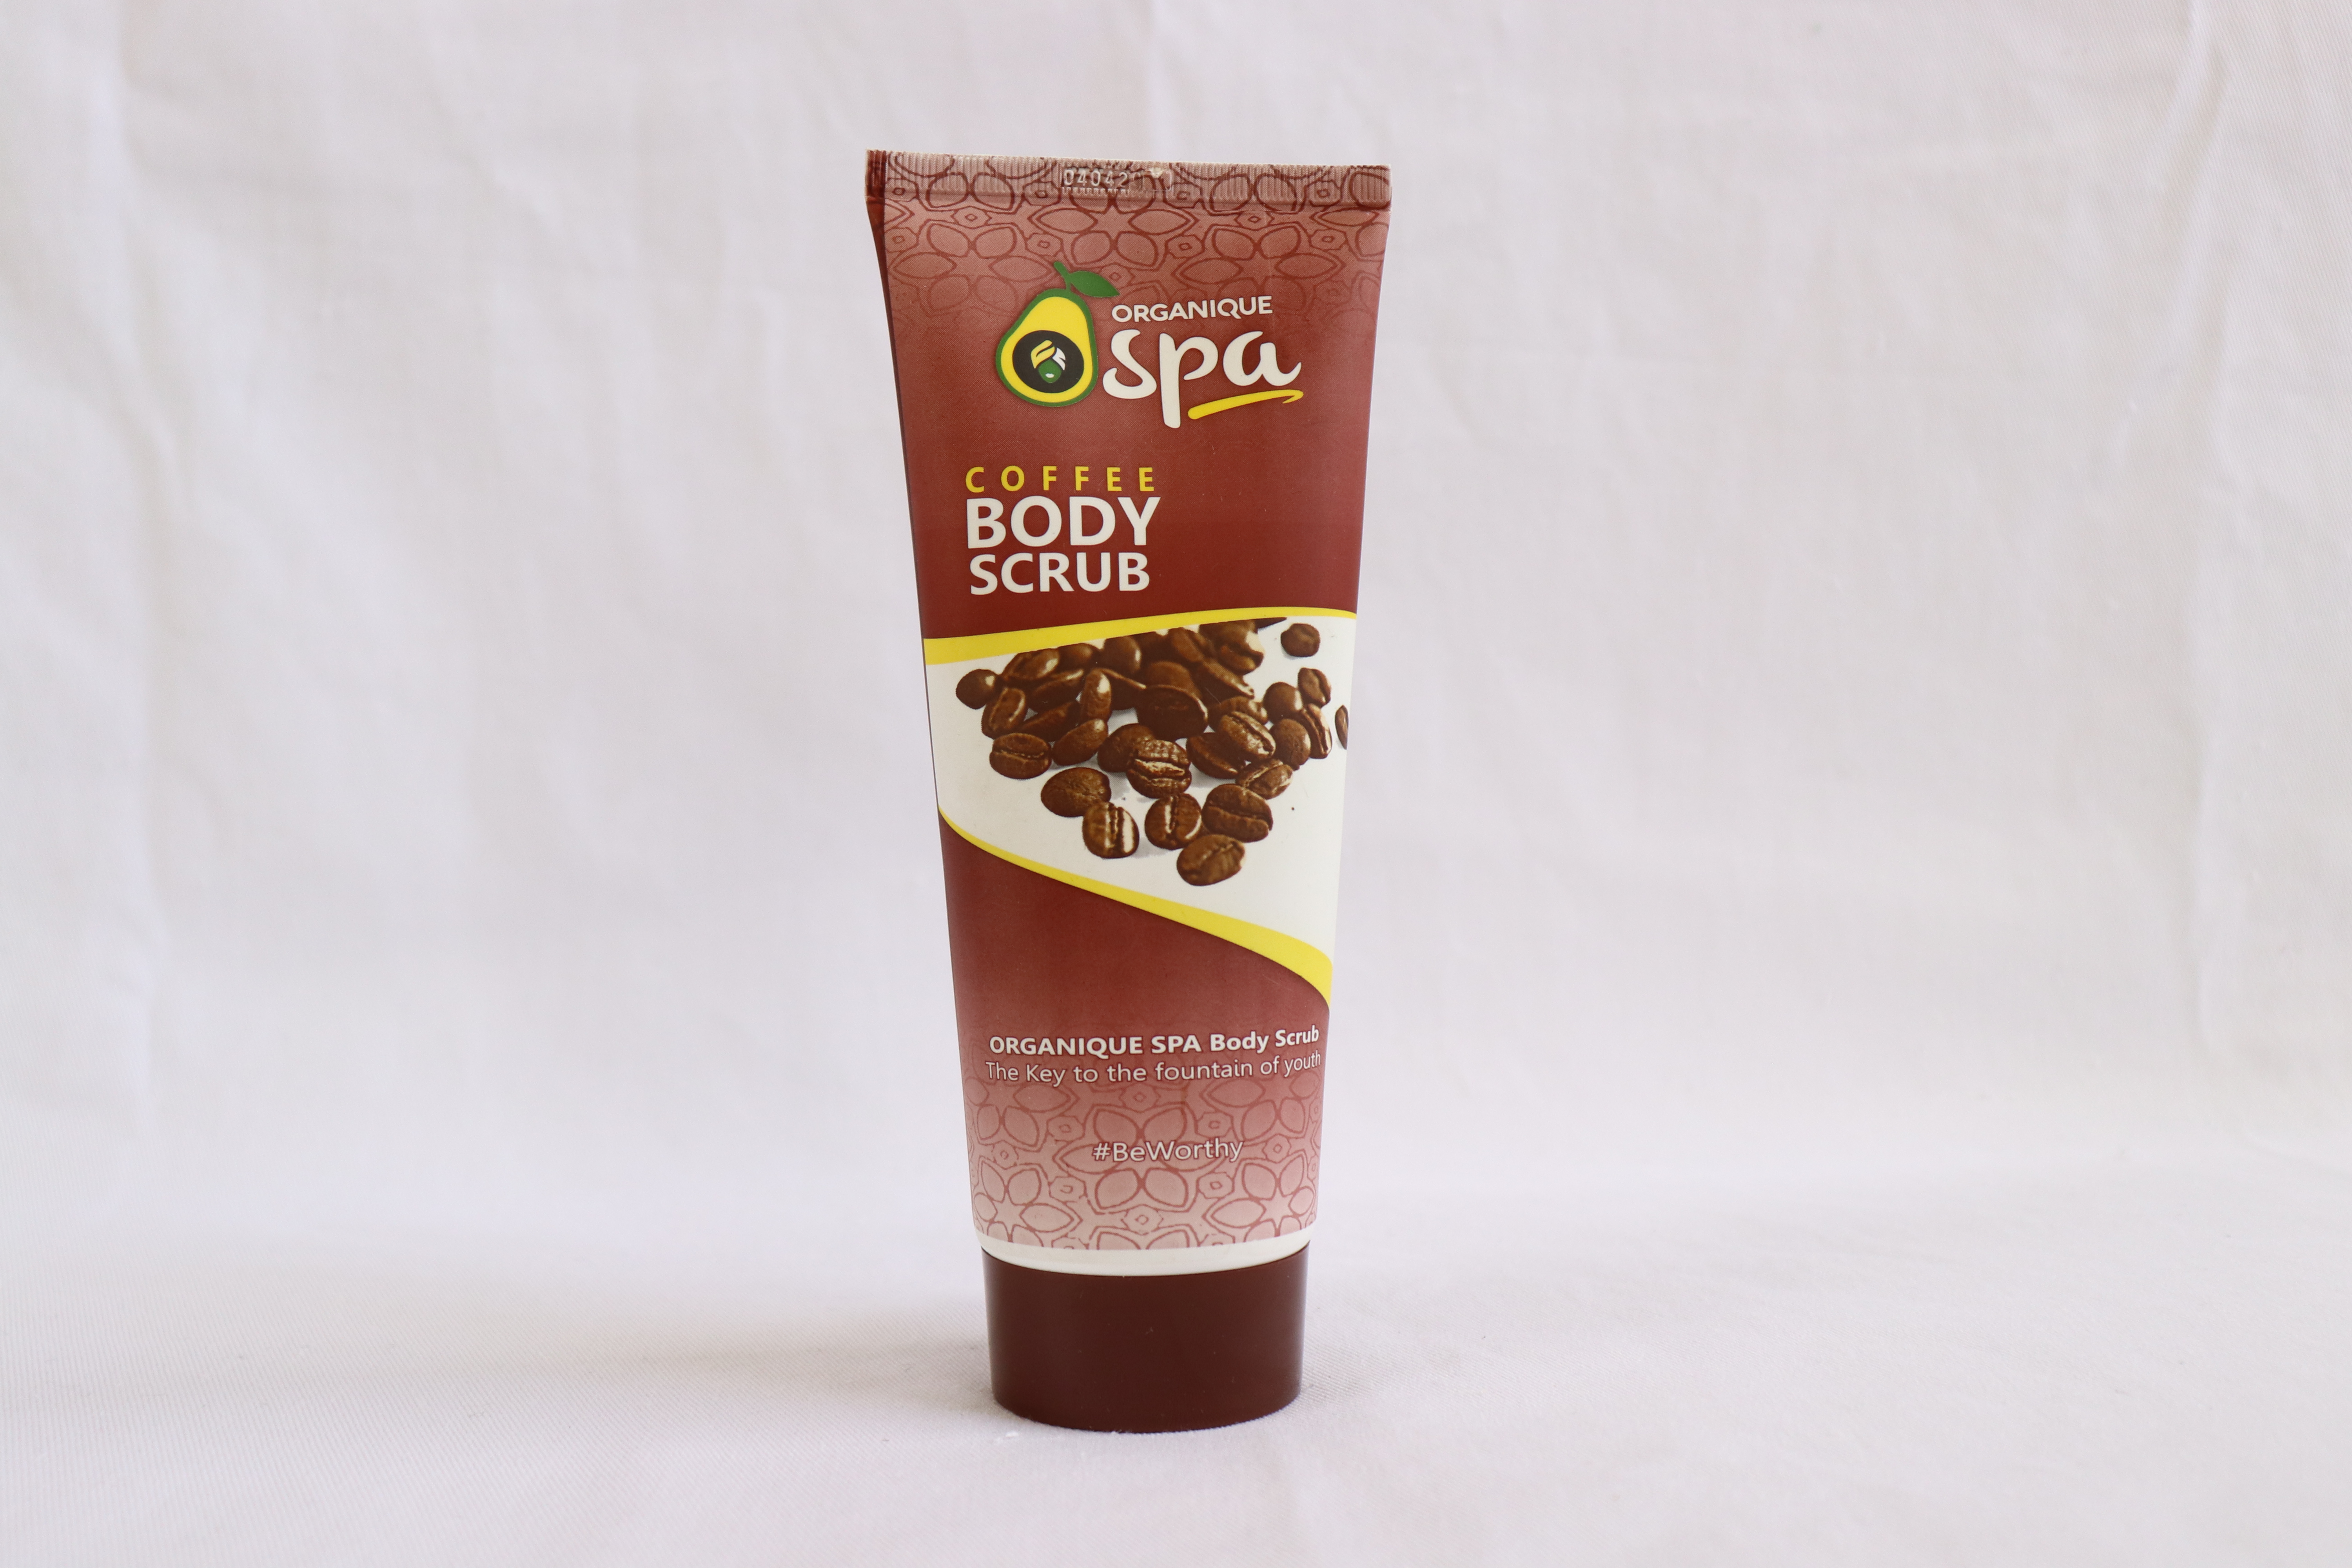 Organique SPA Coffee Bodyscrub